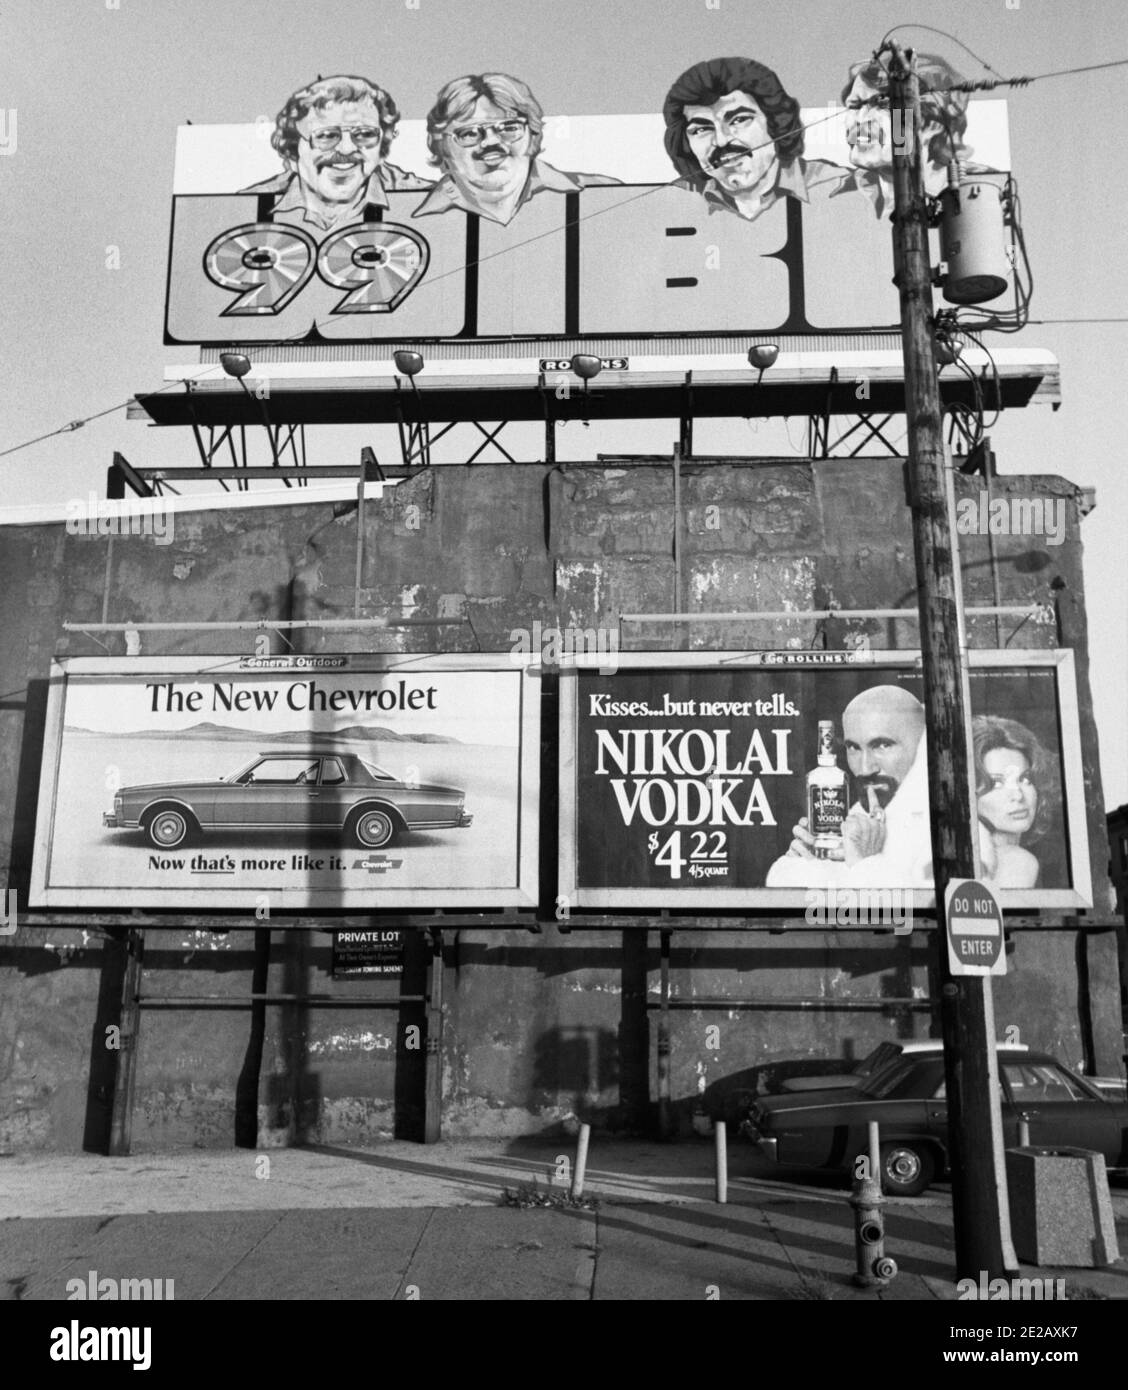 Nikolai Vodka, Philadelphia, USA, 1976 Stock Photo